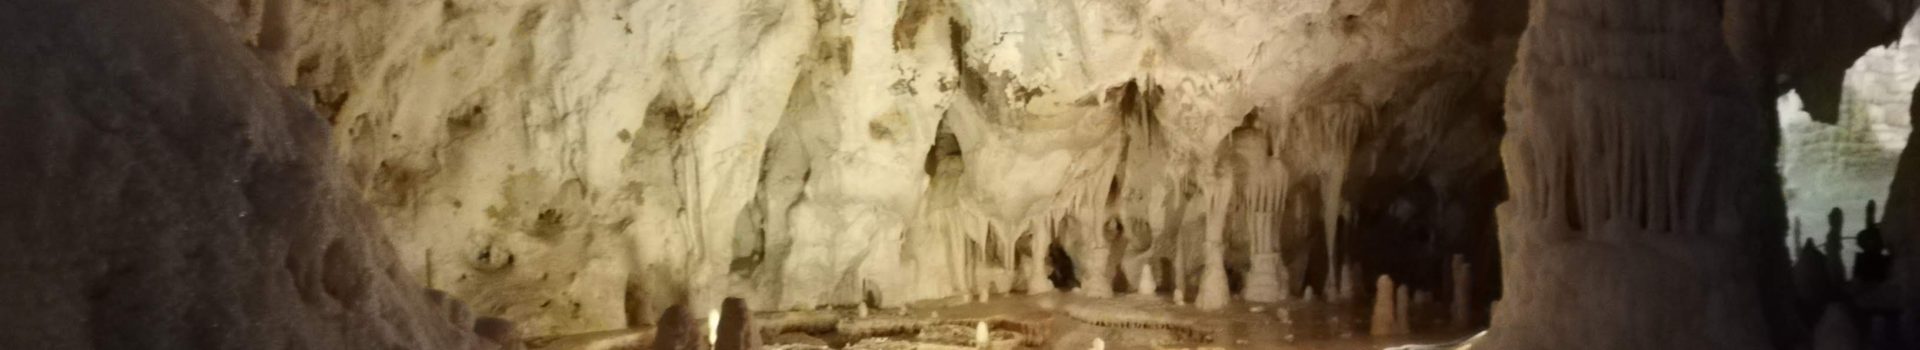 世界に誇るマルケ州の自然美、Frasassi 鍾乳洞